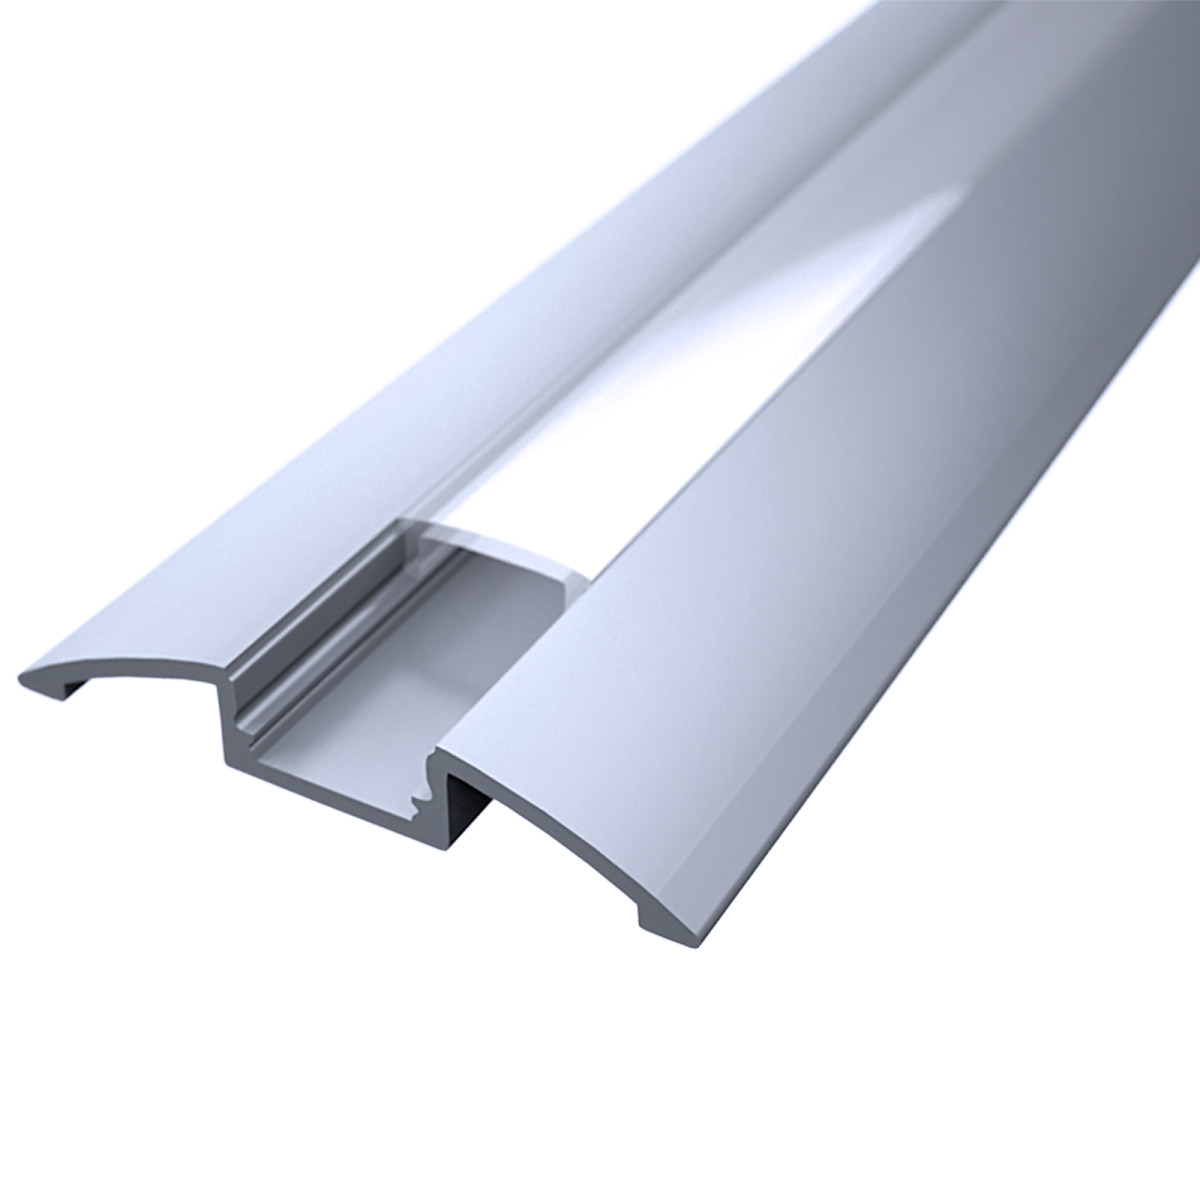 LED Flachprofil "Design-Line" | Abdeckung transparent | Zuschnitt auf 56cm |